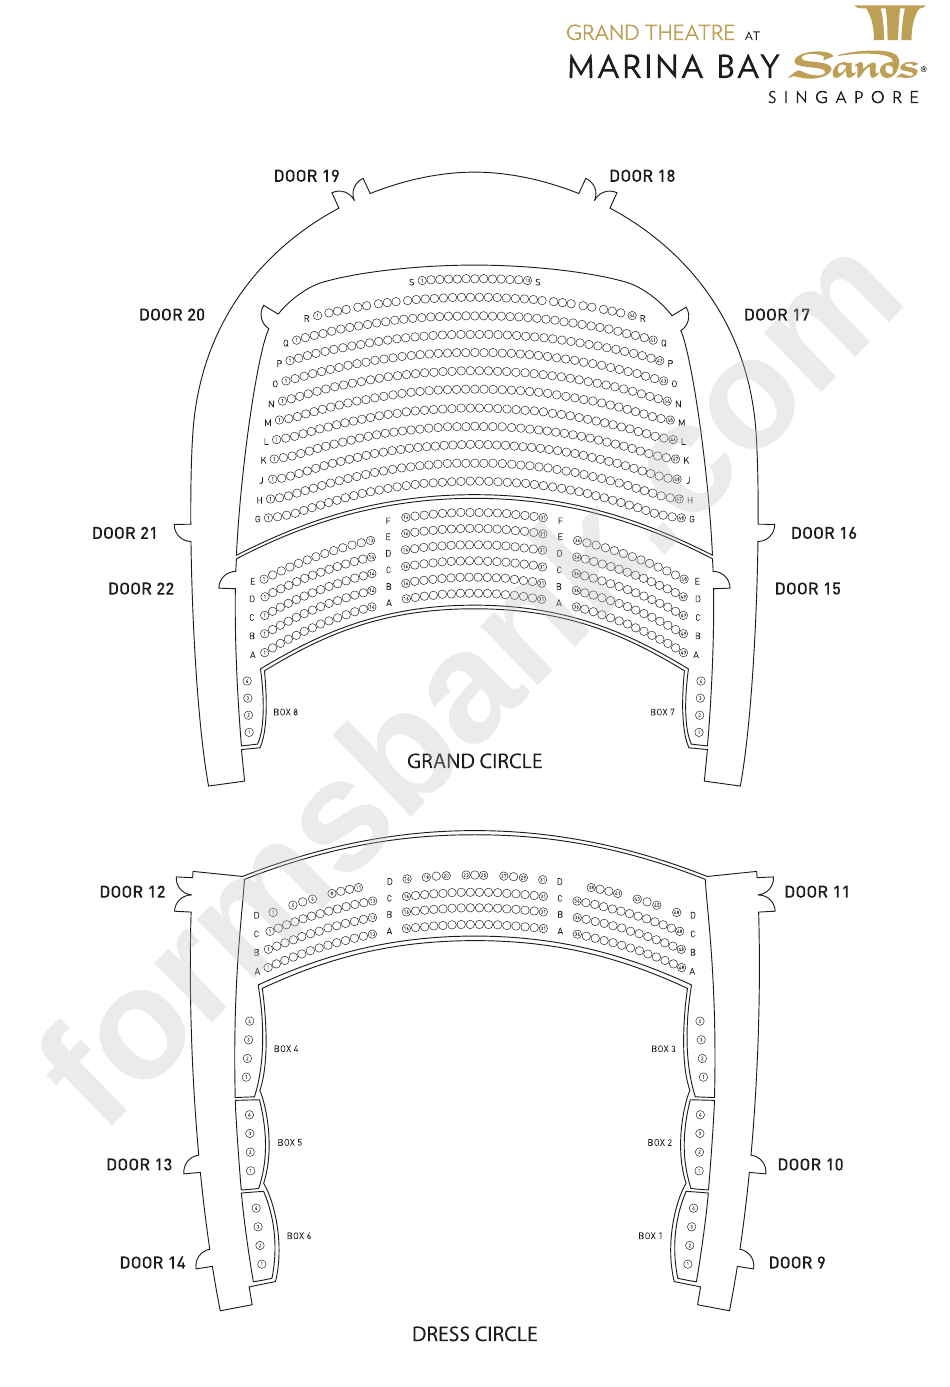 Seating Plan - Marina Bay Sands